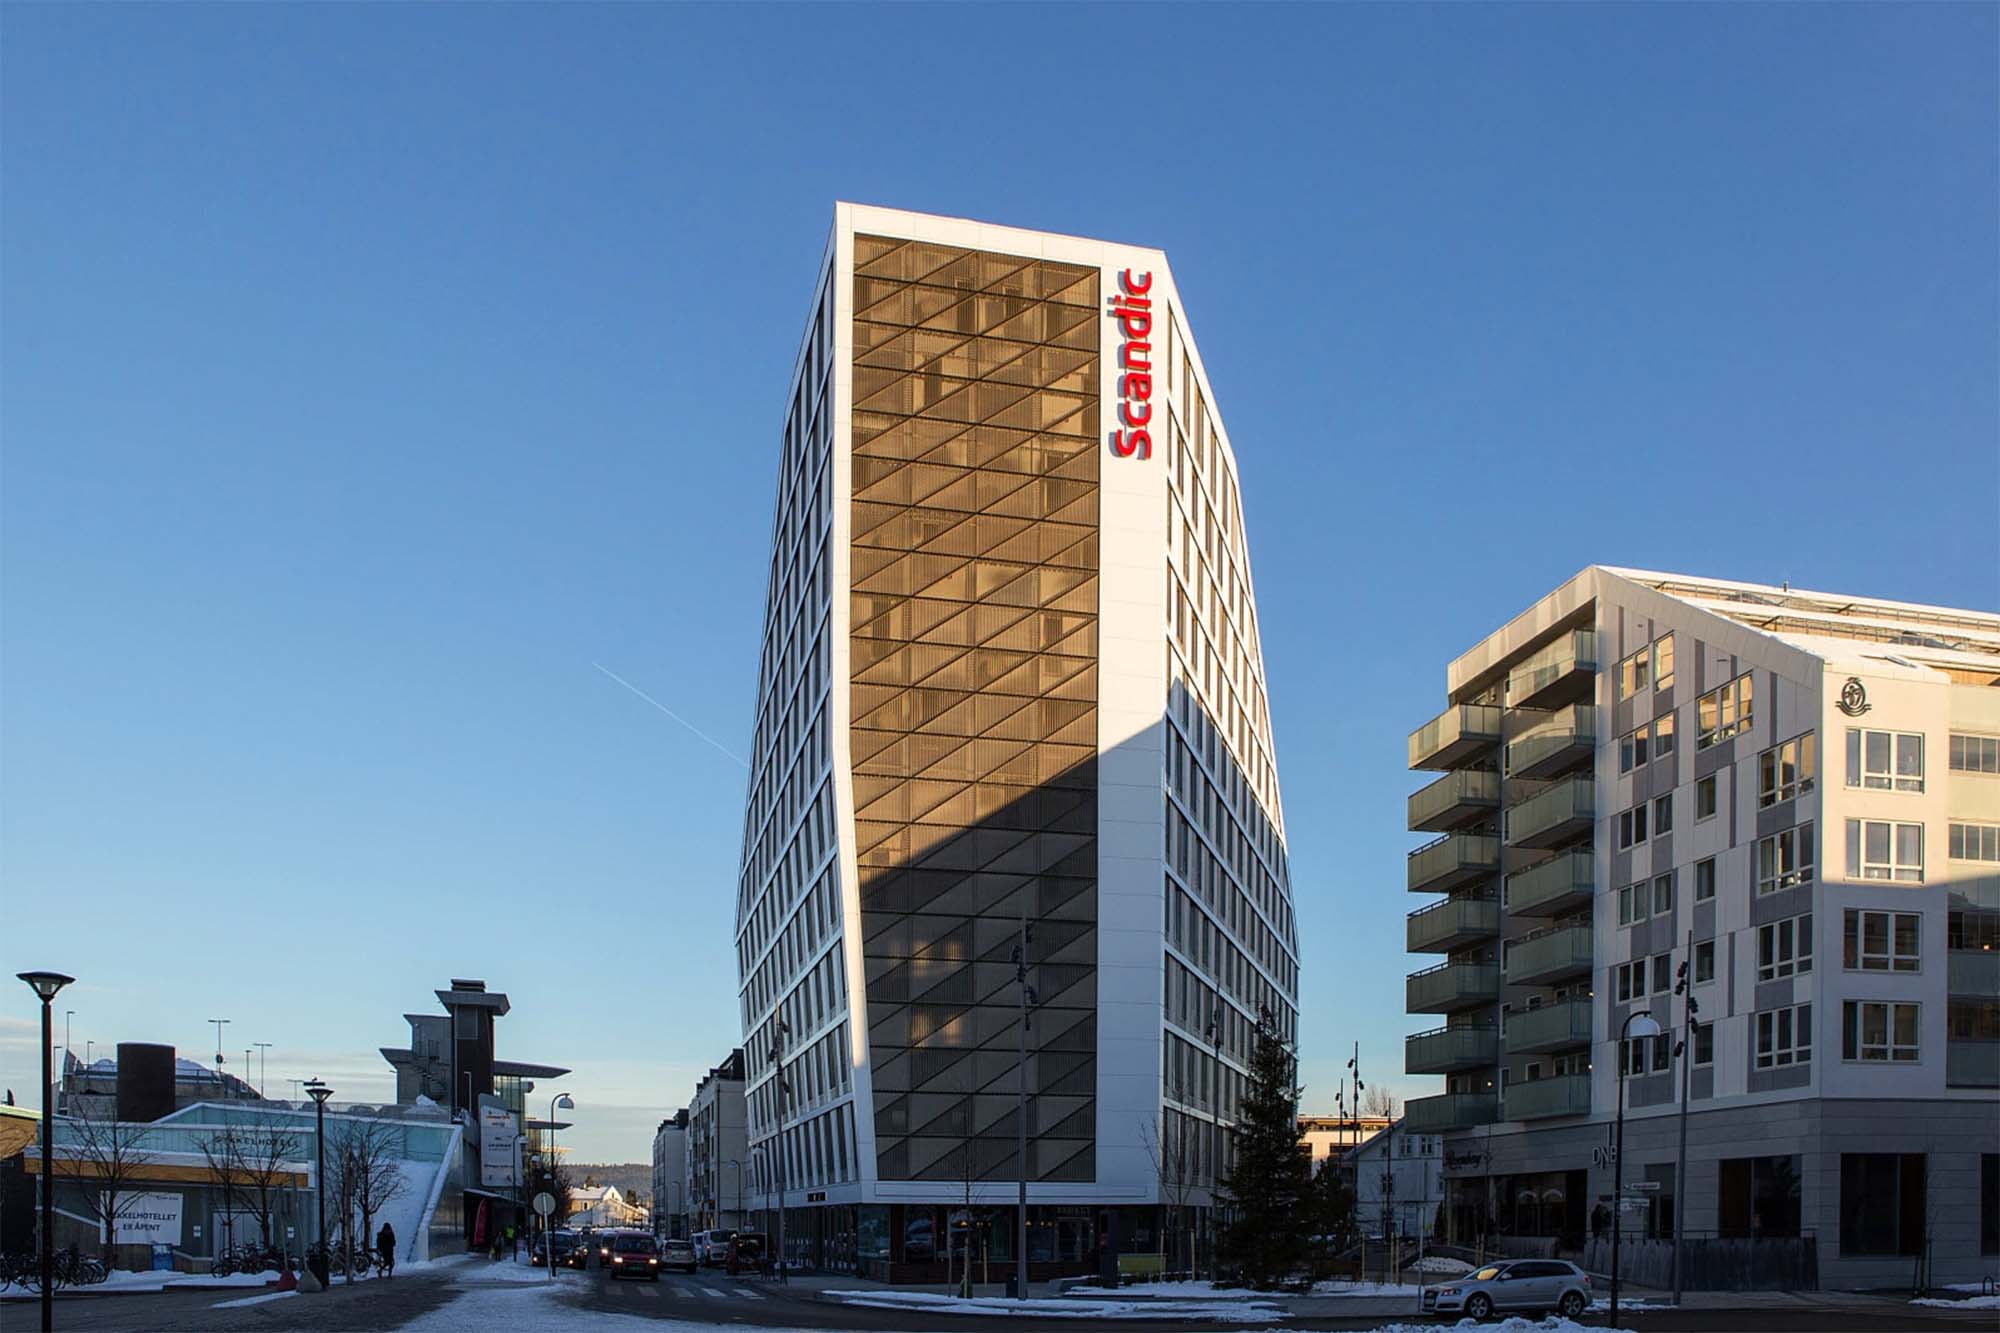 Fasadebilde av Scandic hotell på Lillestrøm